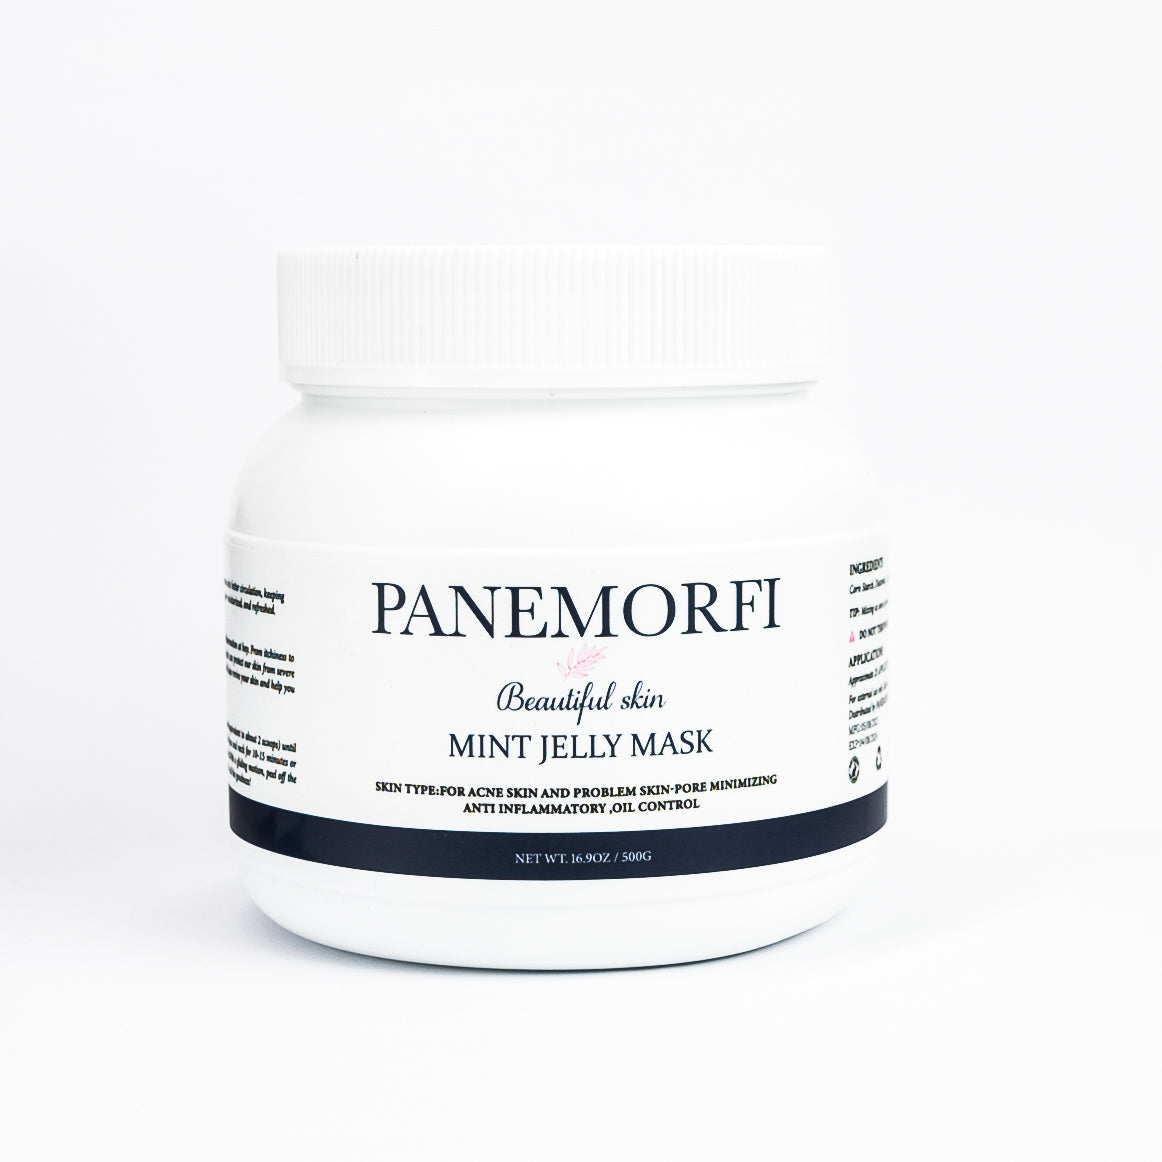 Panemorfi - Mint Jelly Mask